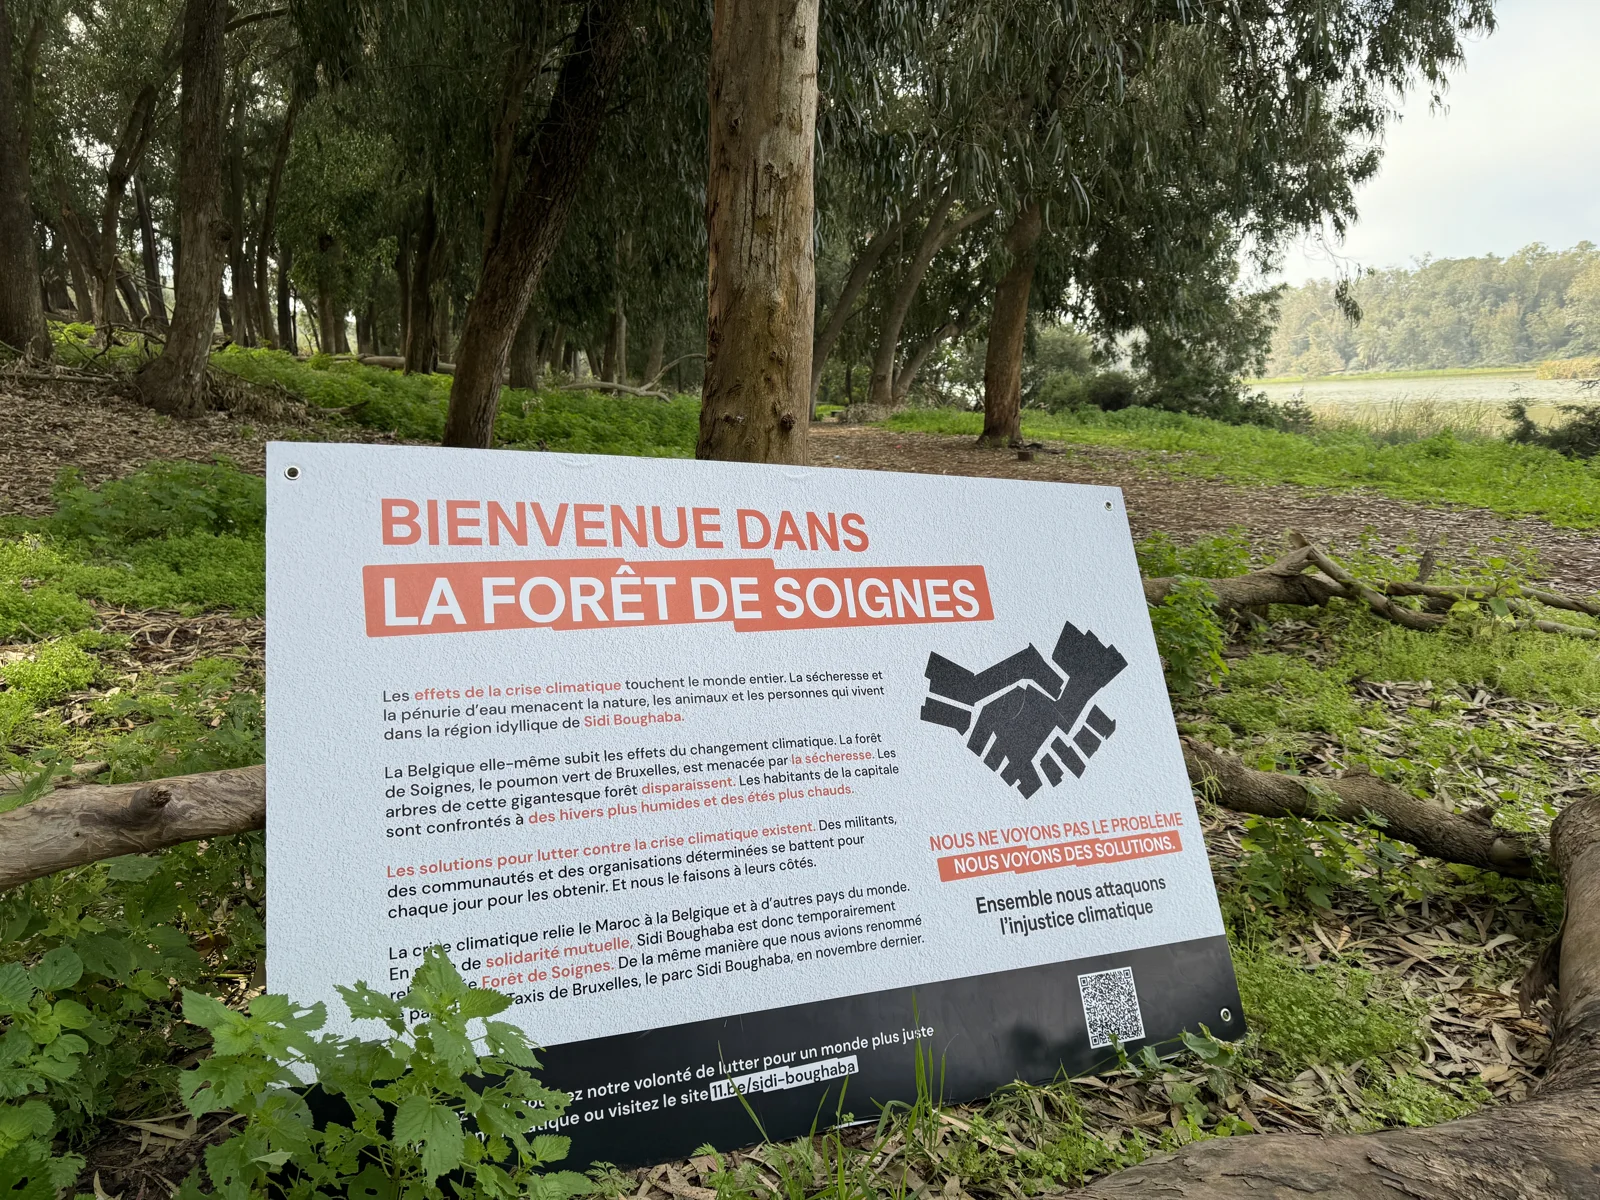 Een bord geplaatst voor een bos, heet bezoekers welkom in het Zoniënwoud.